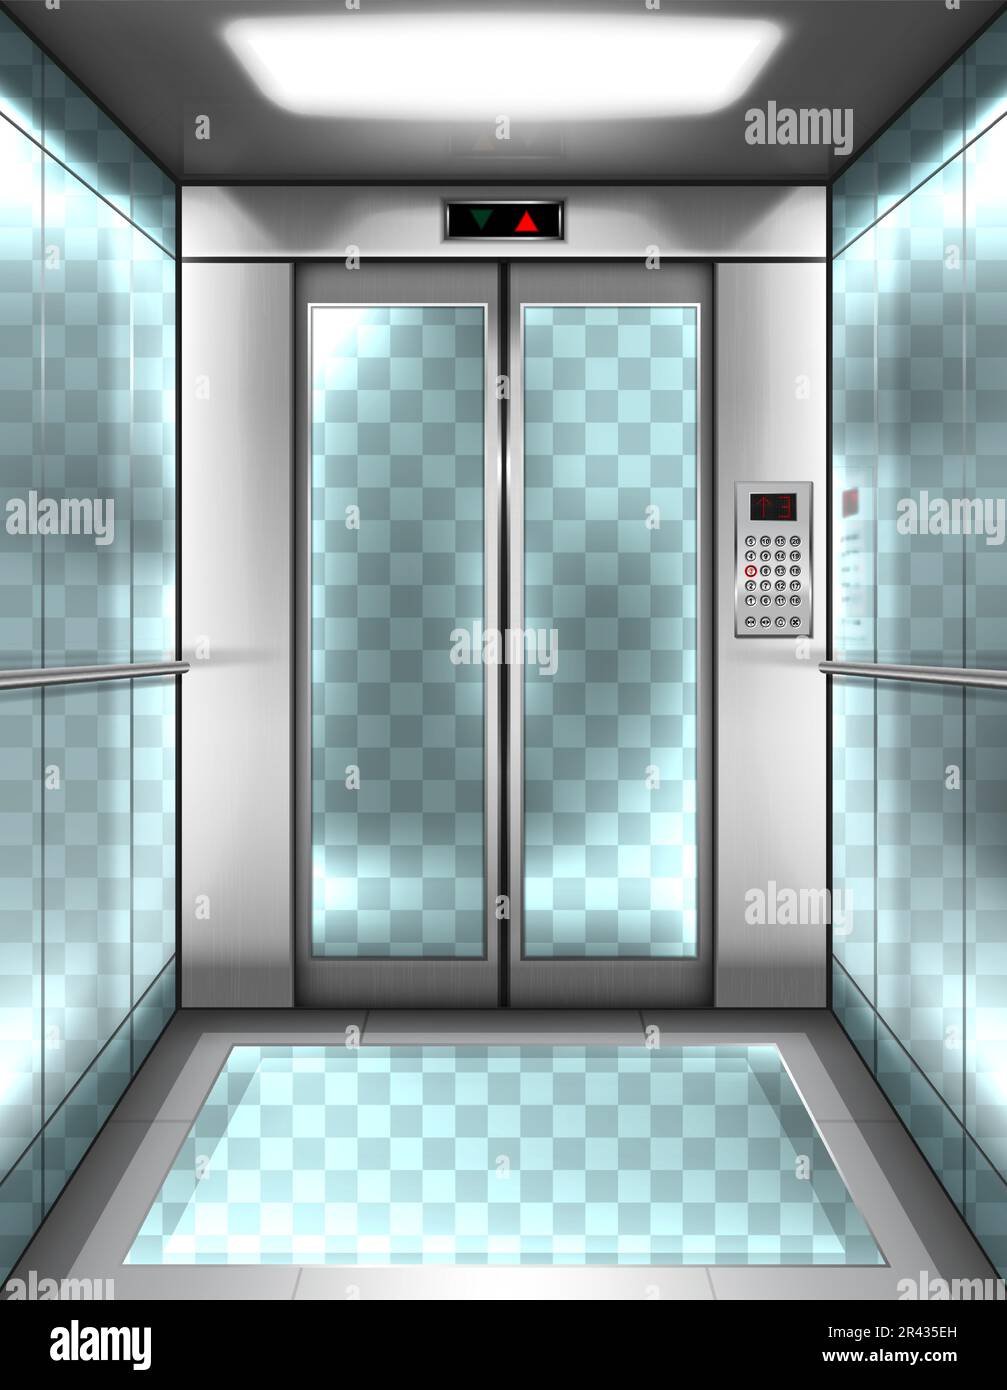 Cabine d'ascenseur en verre vide avec murs transparents, plancher et portes fermées. Intérieur vectoriel réaliste de l'ascenseur passager avec panneau de boutons et affichage numérique avec flèches vers le haut et vers le bas dans le bâtiment de bureau Illustration de Vecteur